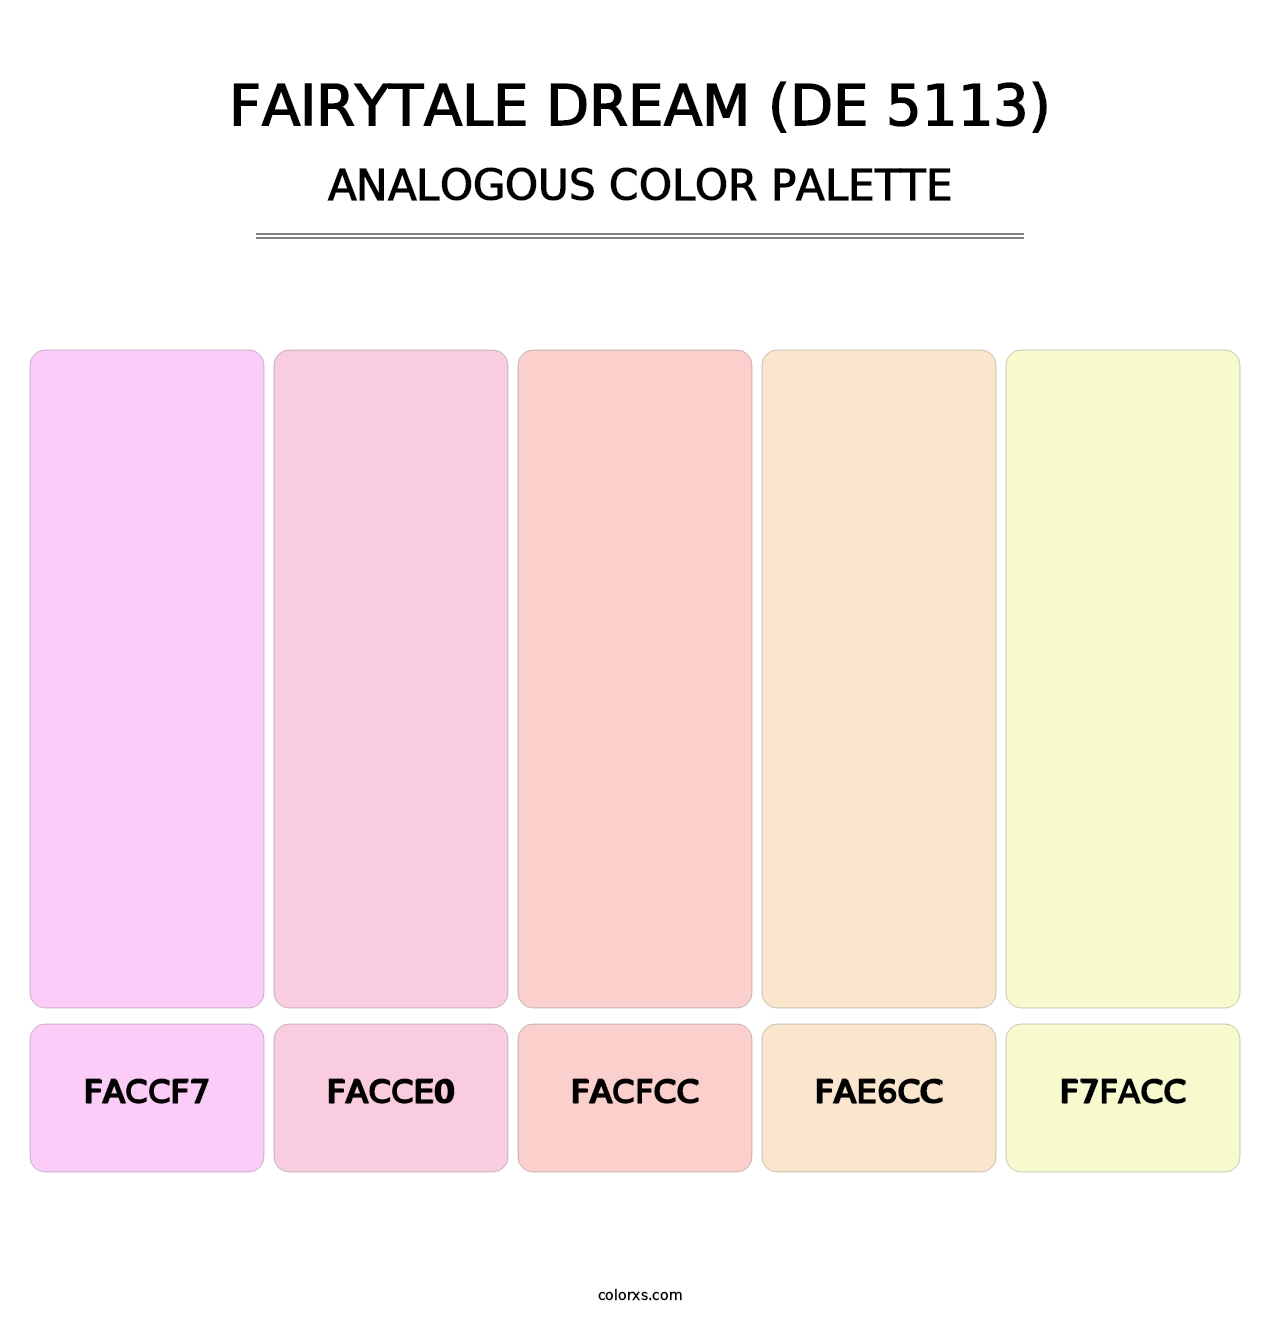 Fairytale Dream (DE 5113) - Analogous Color Palette